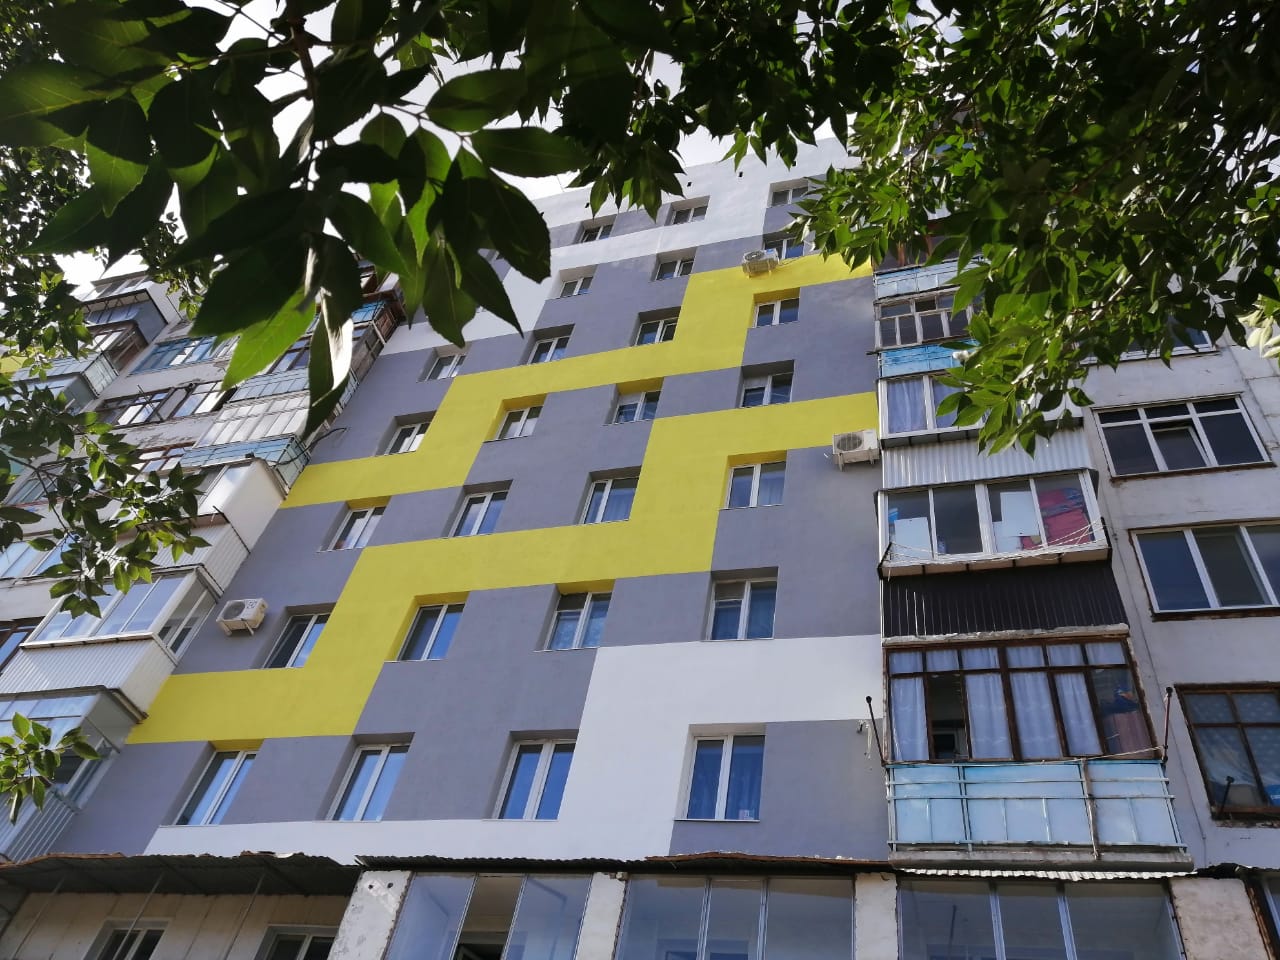 Капитальный ремонт дома по ул. Дзержинского, 38 в самом разгаре.